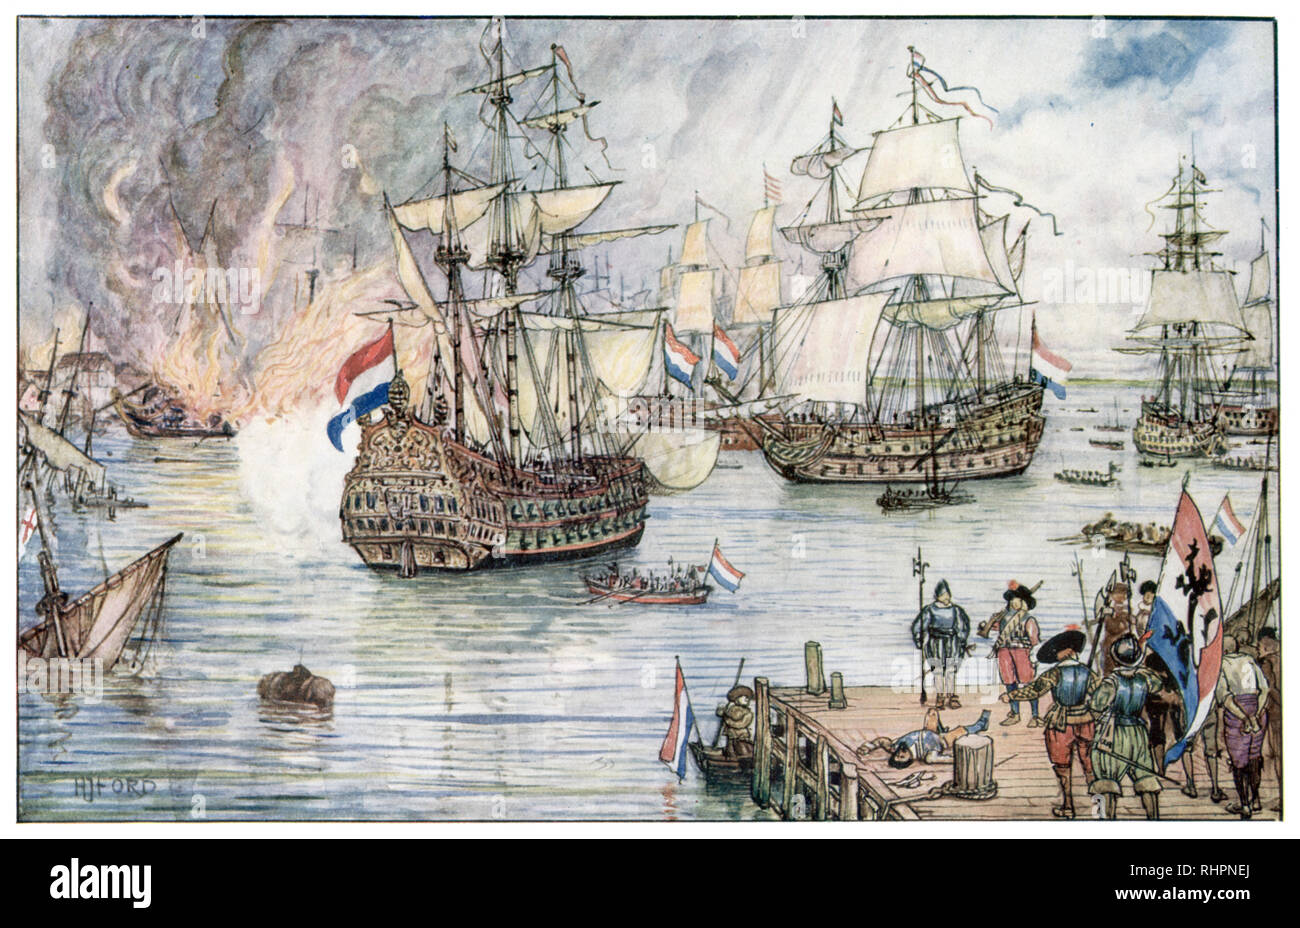 Gli olandesi a Medway. Di Henry Justice Ford (1860-1941). Il RAID sulla Medway (Battaglia di Medway), durante la seconda guerra anglo-olandese nel giugno 1667, fu un attacco di successo condotto dalla marina olandese, la Royal Navy britannica. Foto Stock